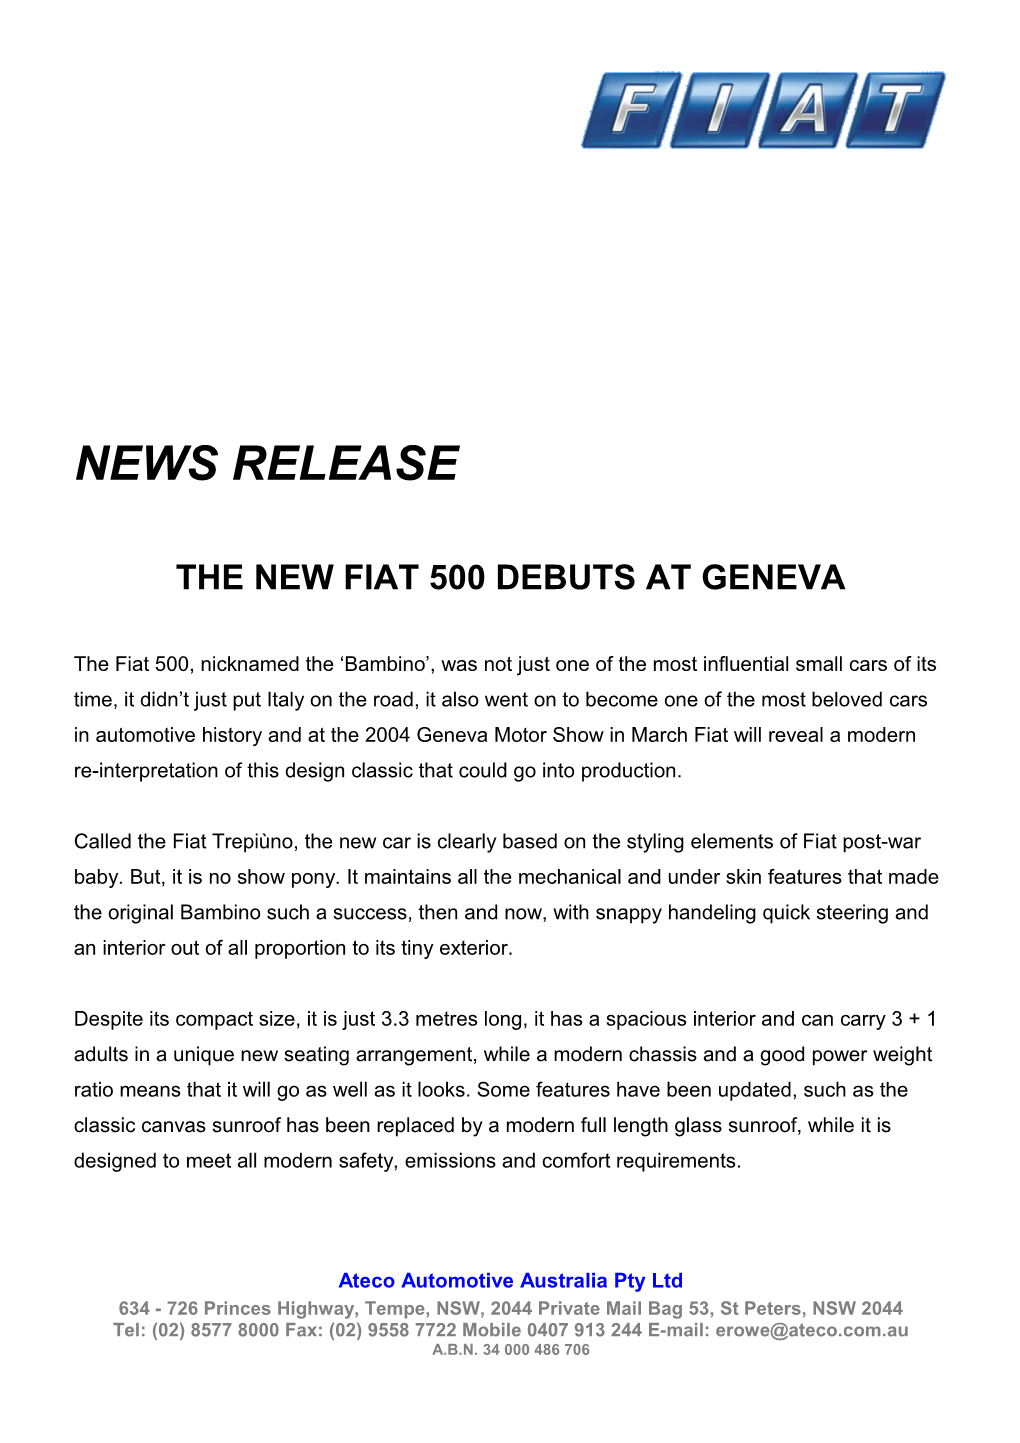 The New Fiat 500 Debuts at Geneva